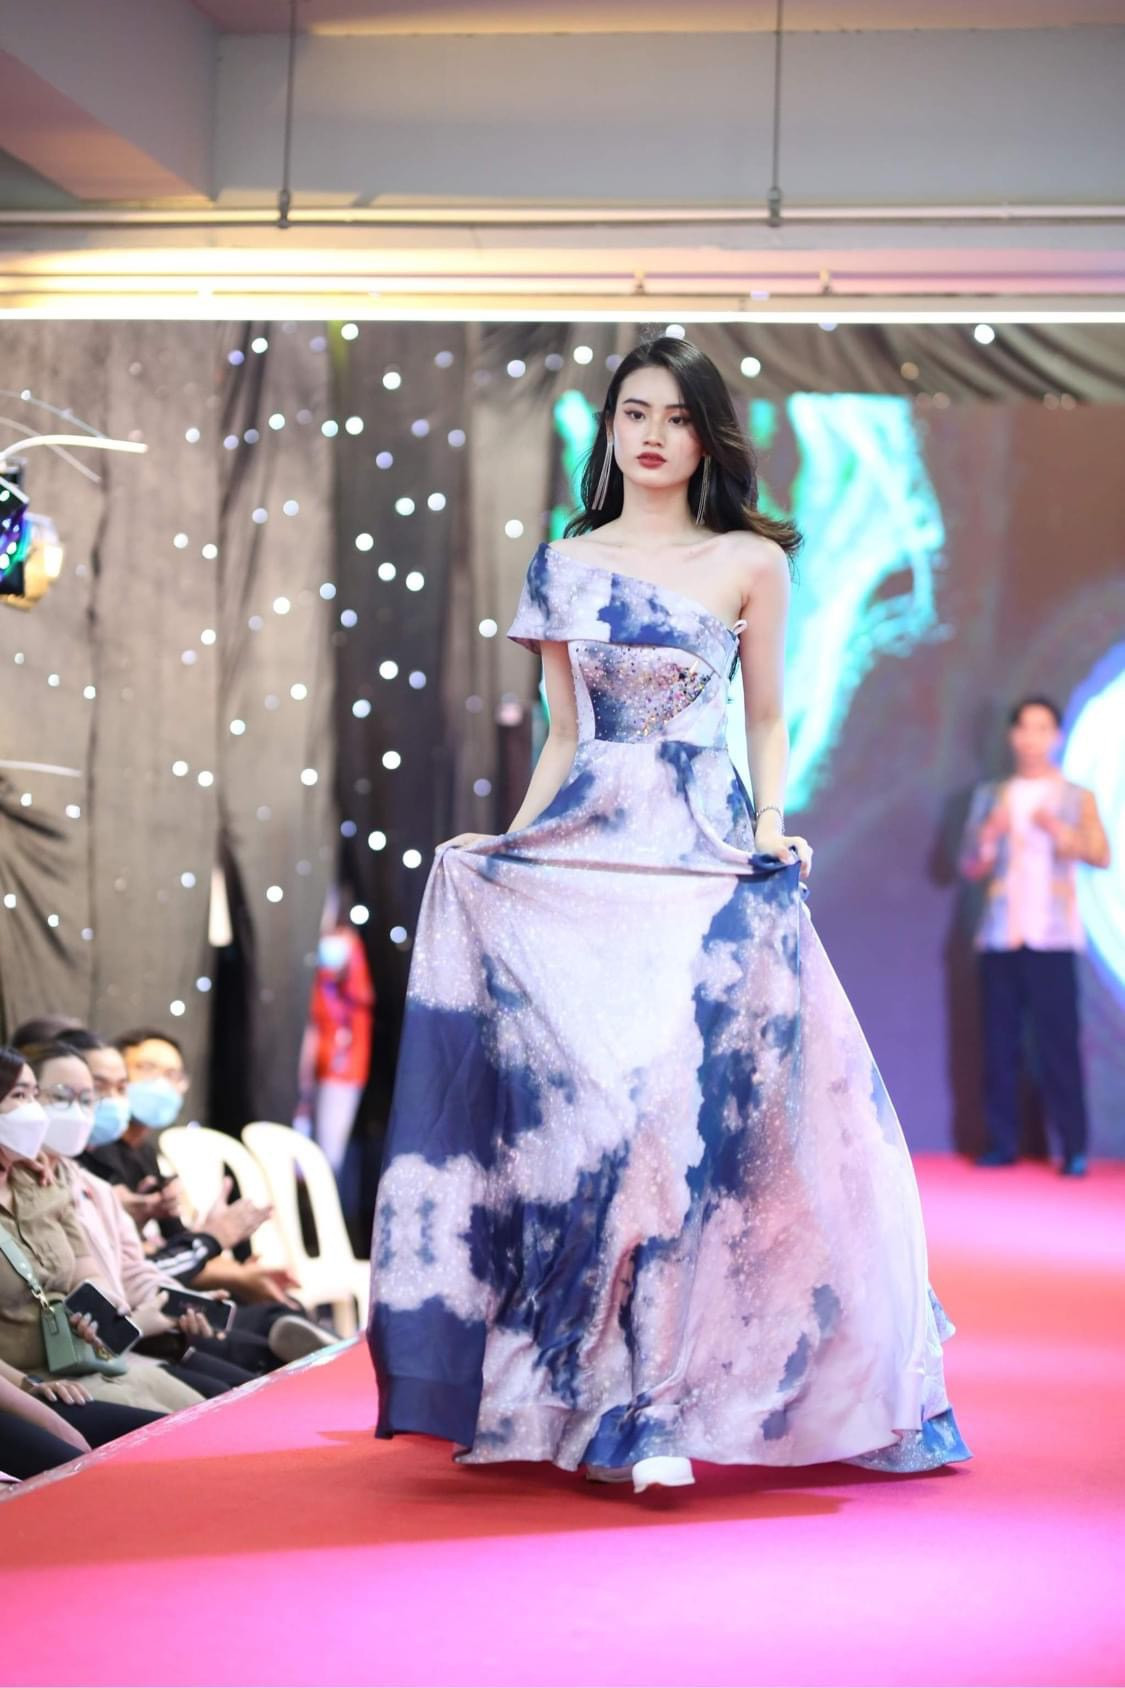 Hành trình thay đổi nhan sắc bất ngờ của Miss World Vietnam Ý Nhi